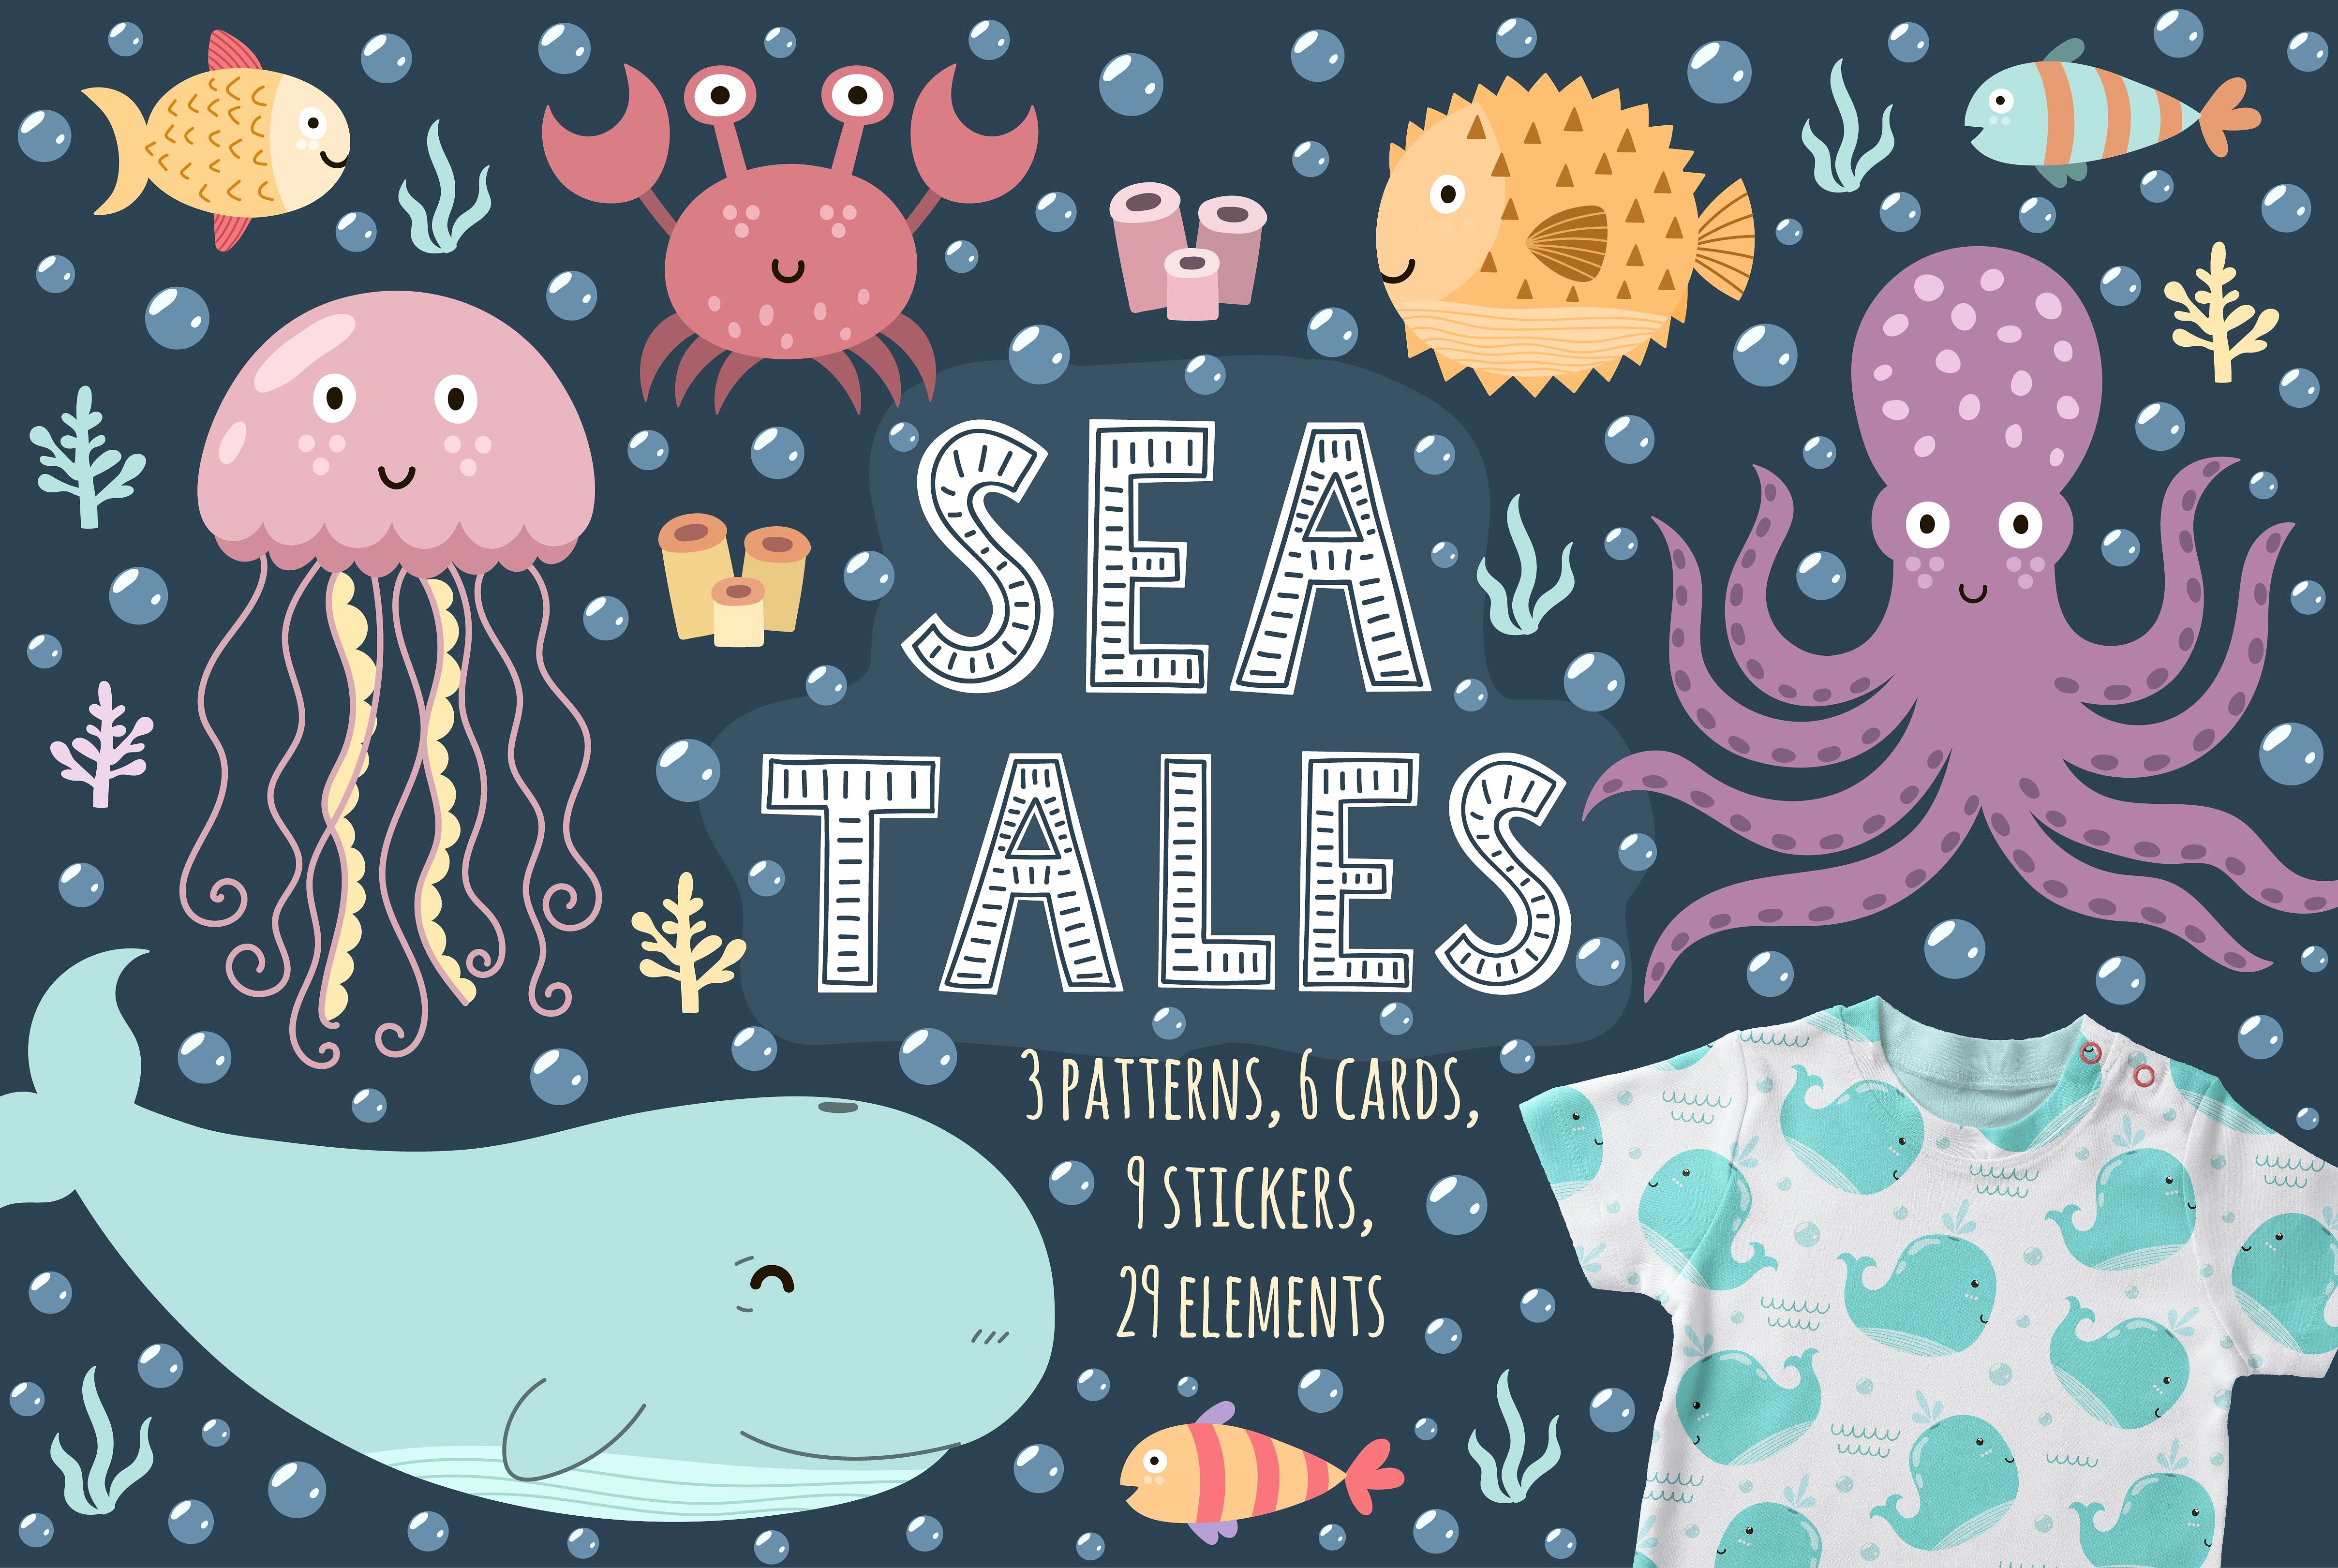 可爱的海洋动物矢量无缝背景素材Sea_Tales_patte